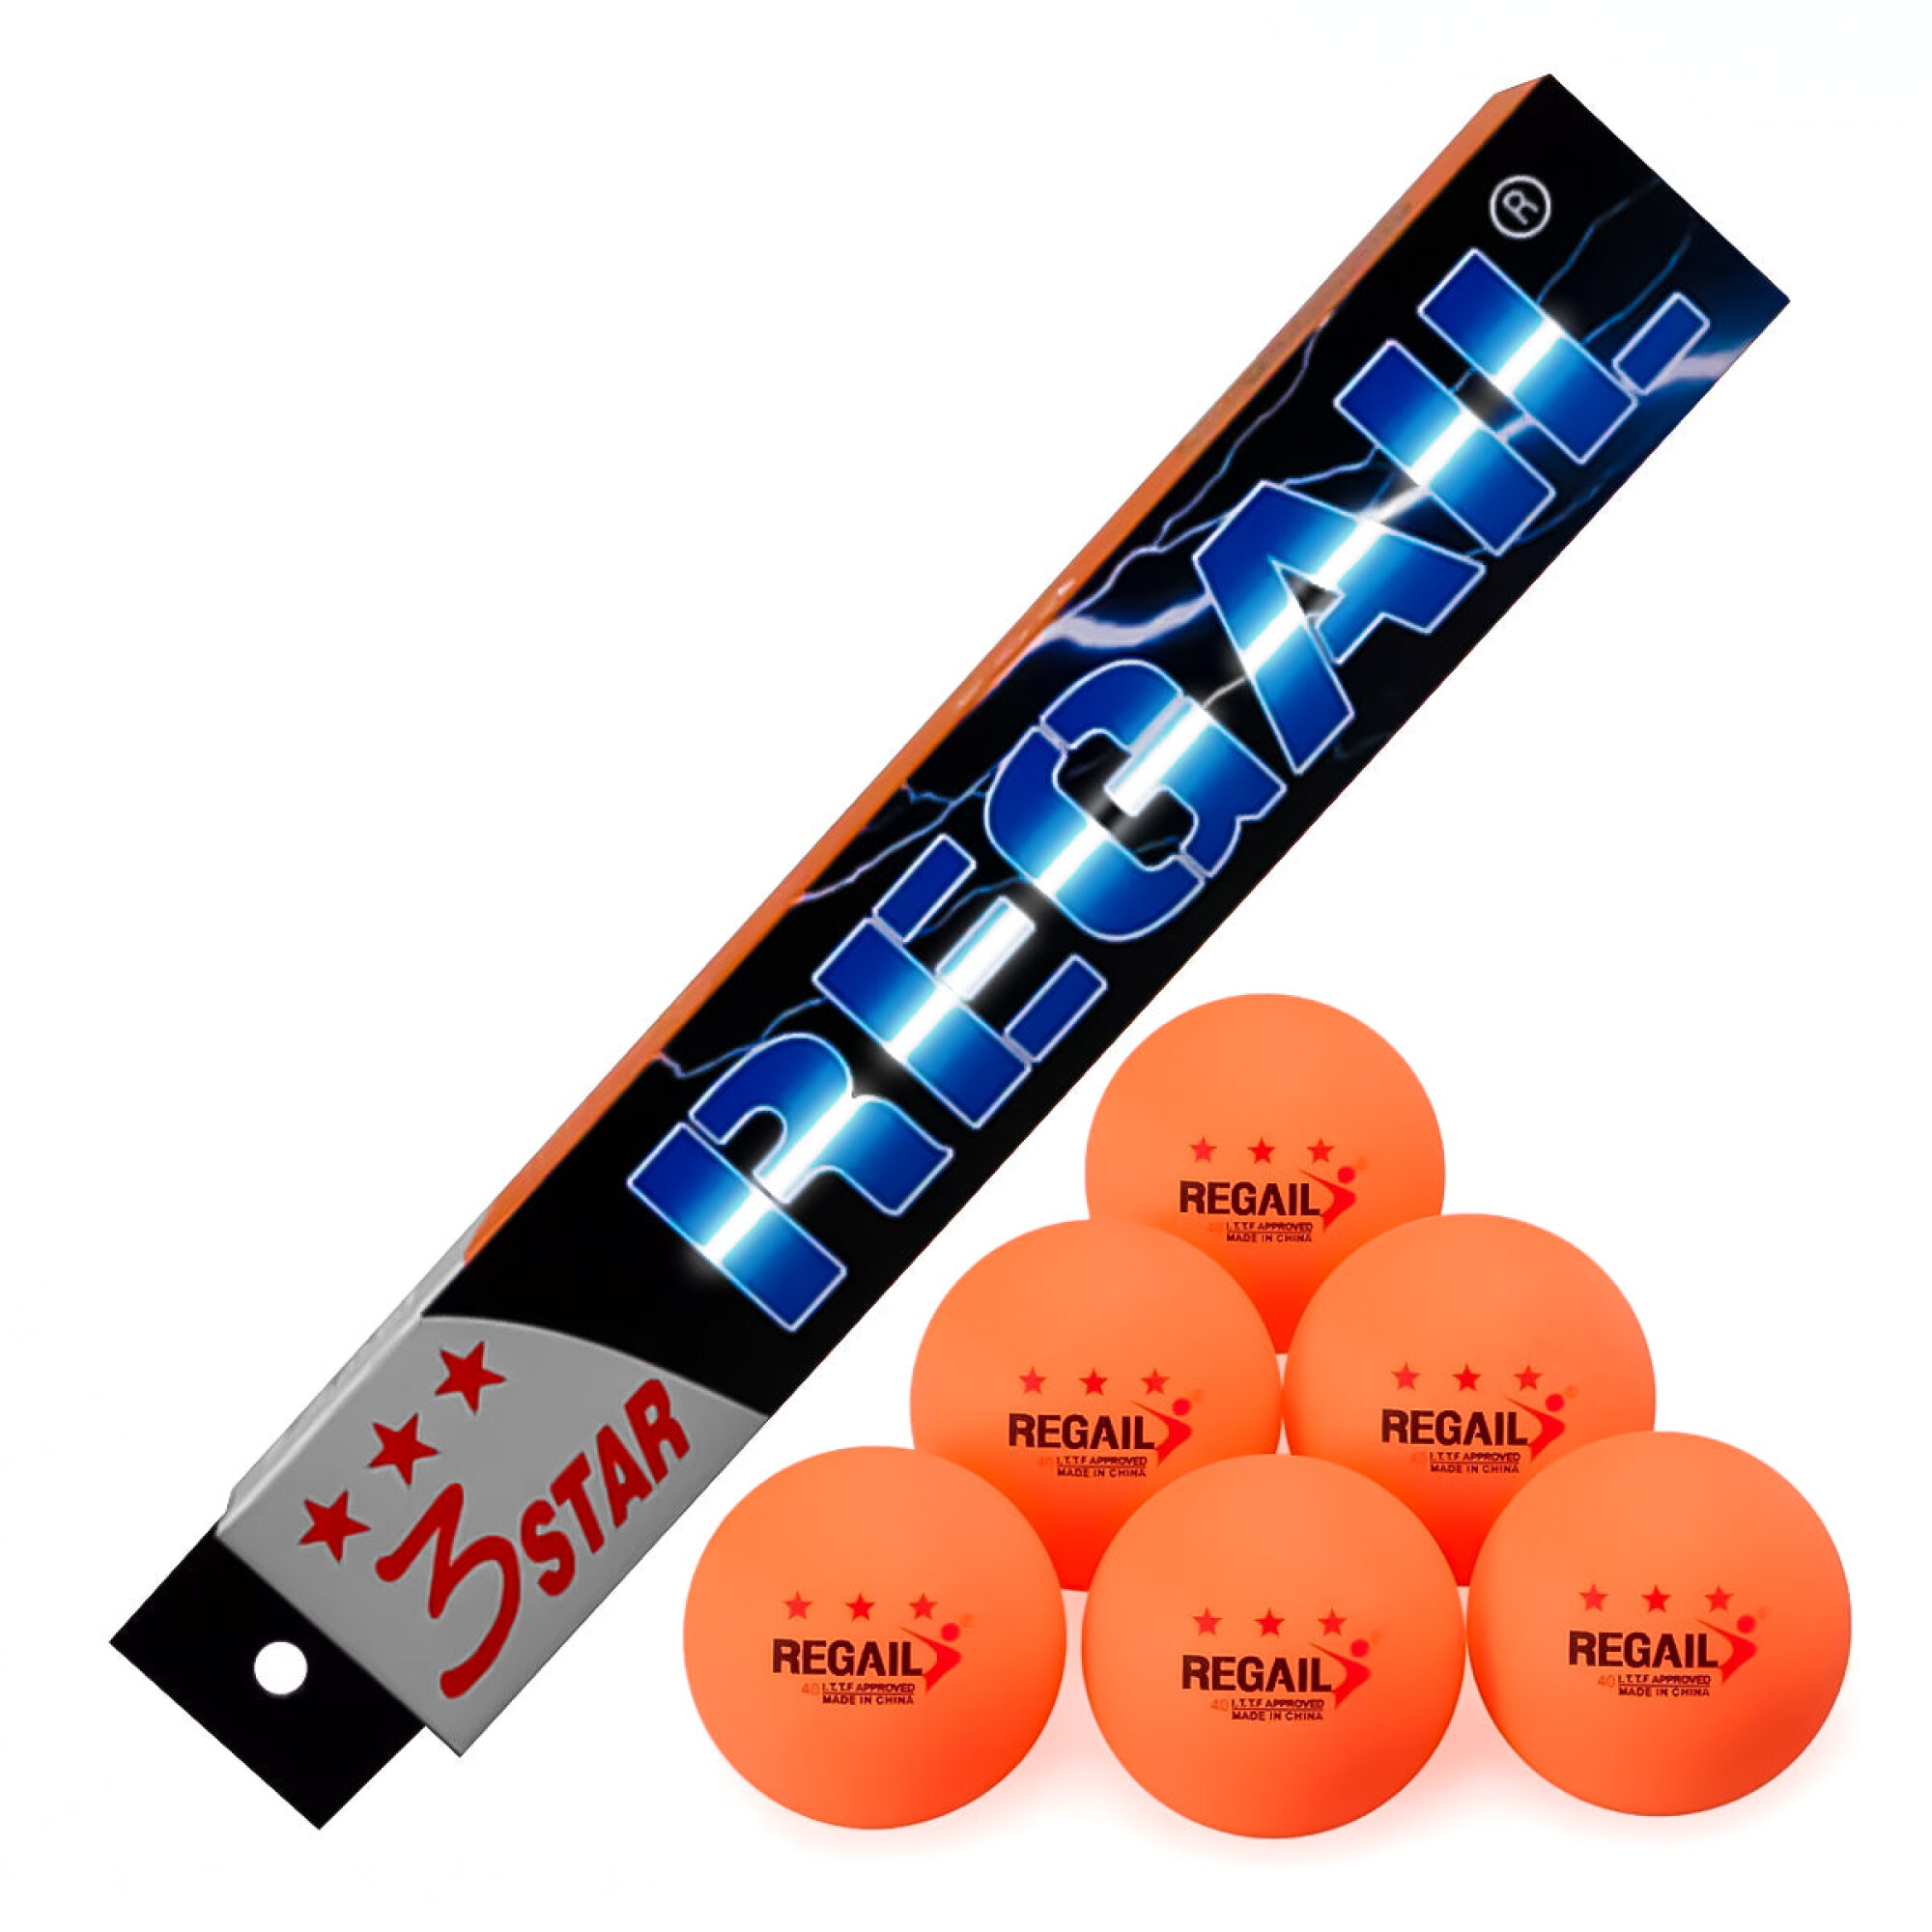 Set de pelotas Cypress ping pong